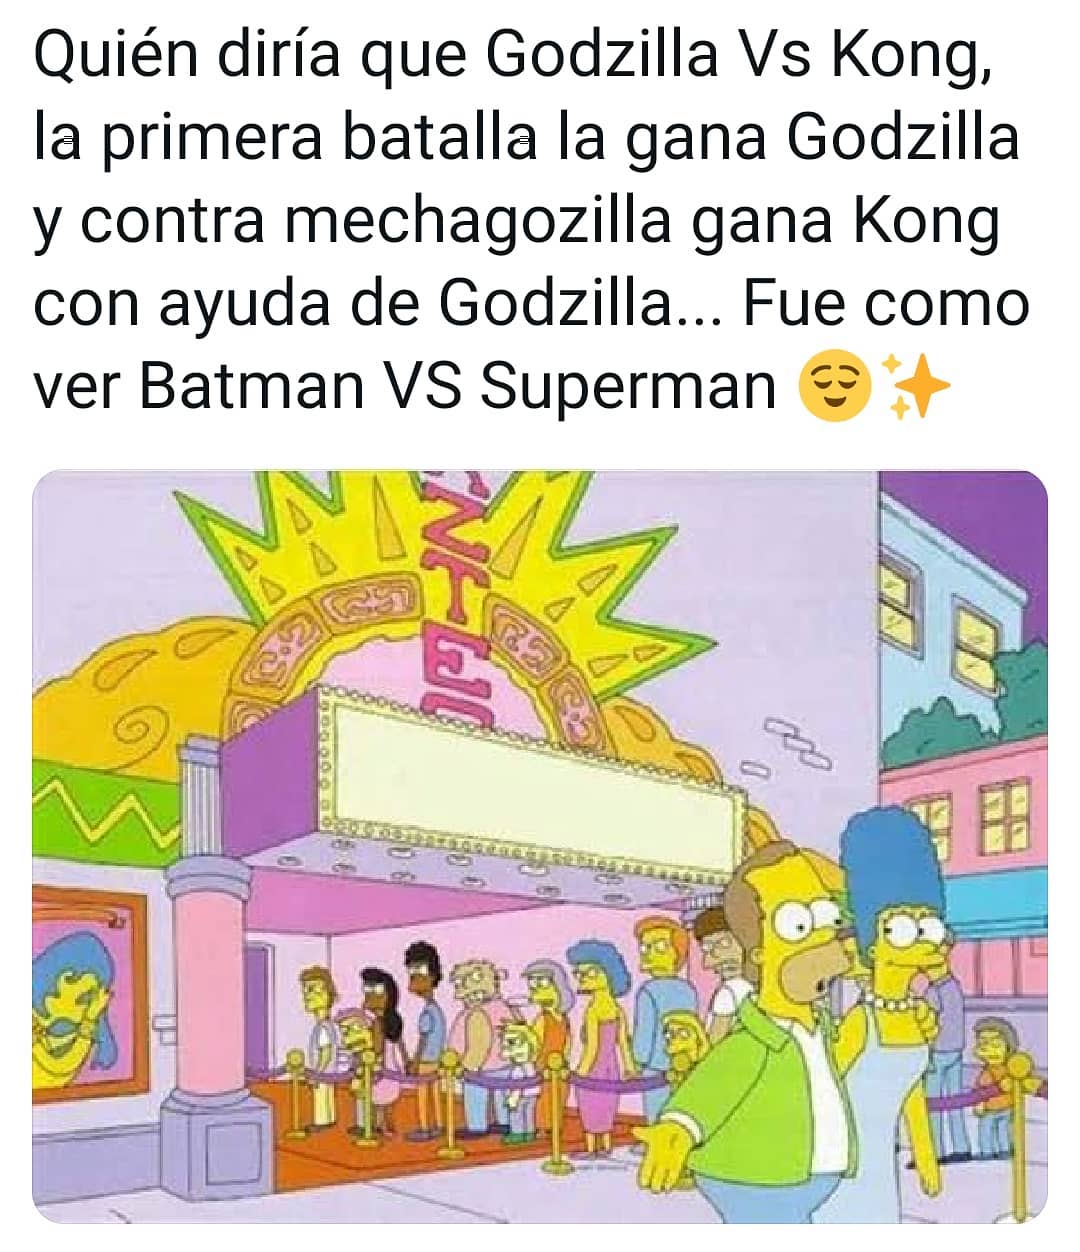 Quién diría que Godzilla Vs Kong, la primera batalla la gana Godzilla y contra mechagozilla gana Kong con ayuda de Godzilla... Fue como ver Batman VS Superman.